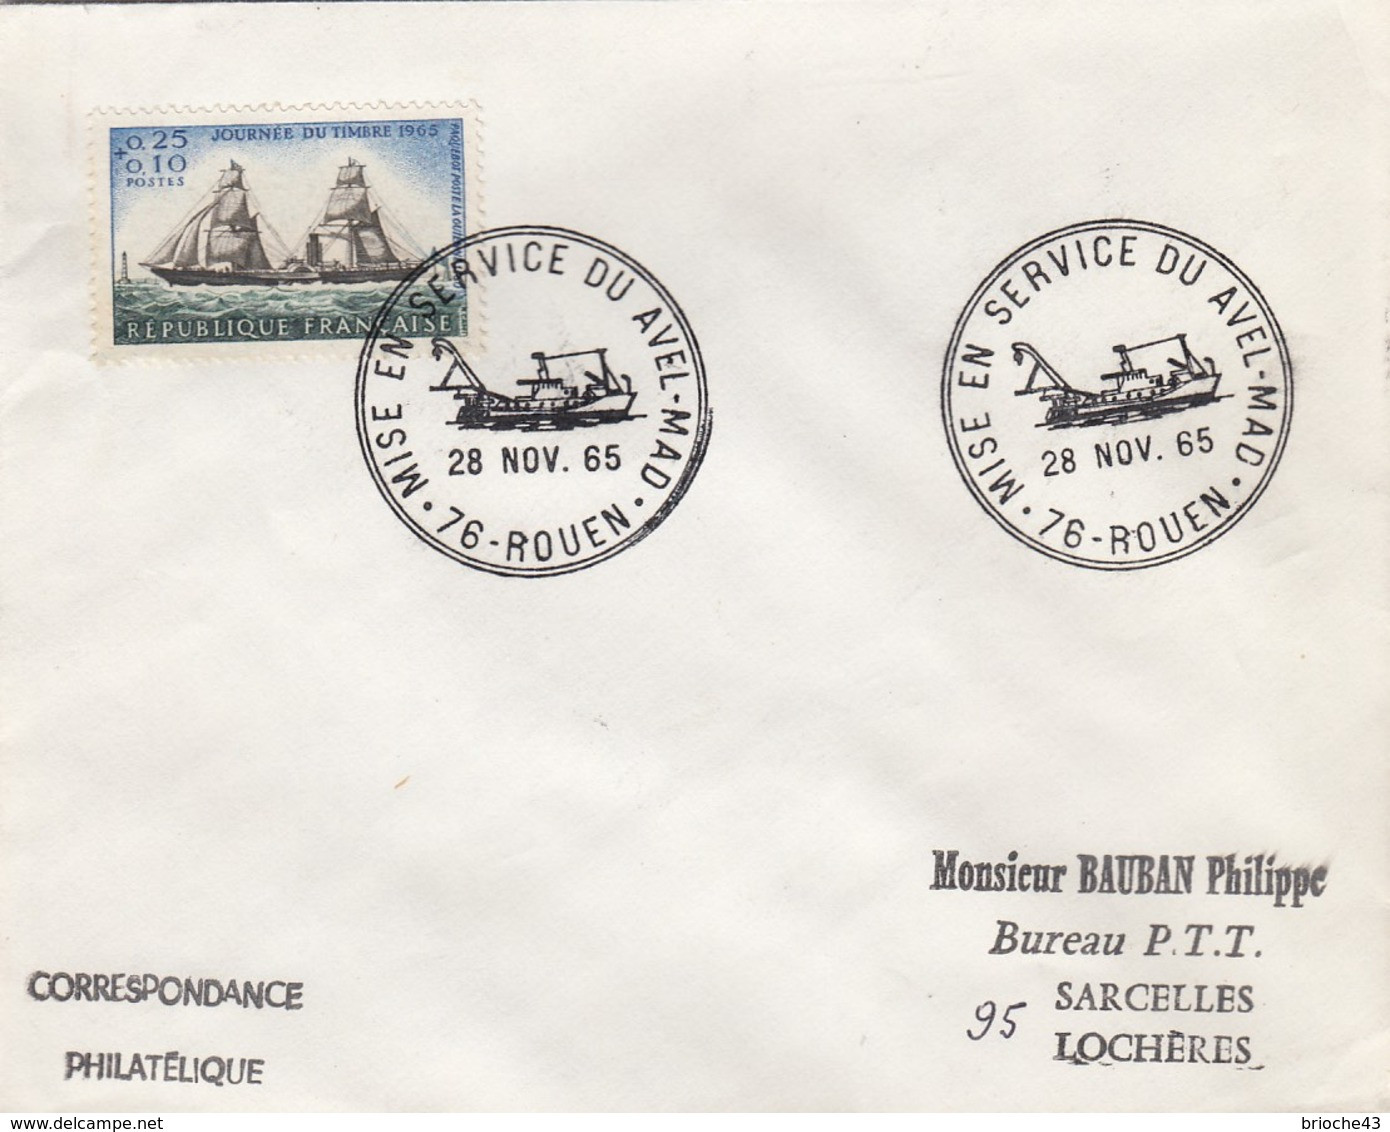 FRANCE - LETTRE JOURNEE TIMBRE 1965   - CACHET ROND MISE EN SERVICE DU AVEL-MAD 28.11.65 ROUEN 76 + VERSO  / 6907 - Storia Postale